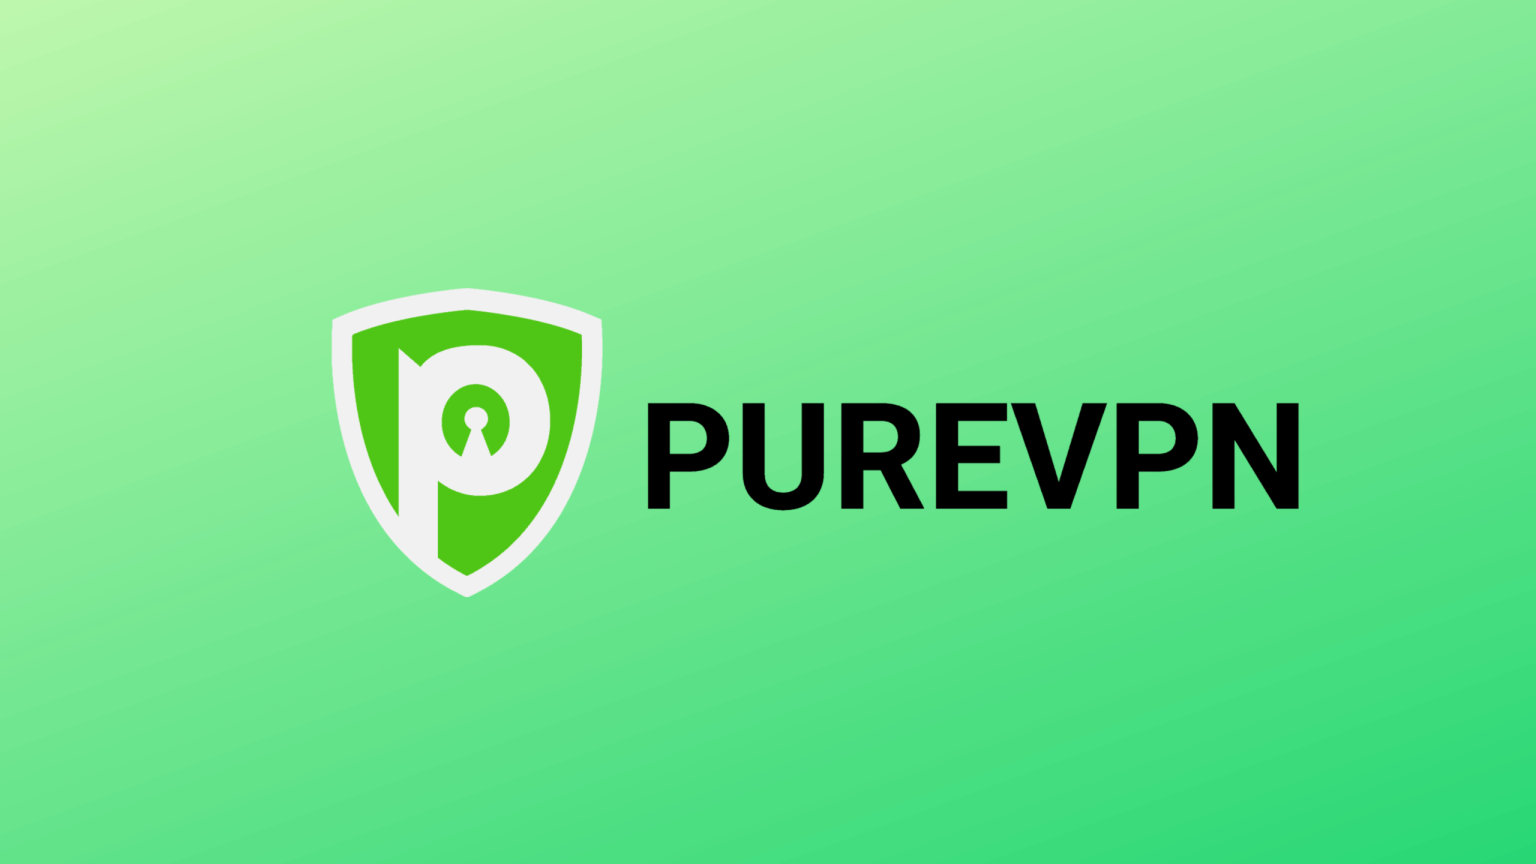 PureVPN 5K 1 scaled • techboys.de: Ratgeber für Netzwerksicherheit, VPNs & IPTV